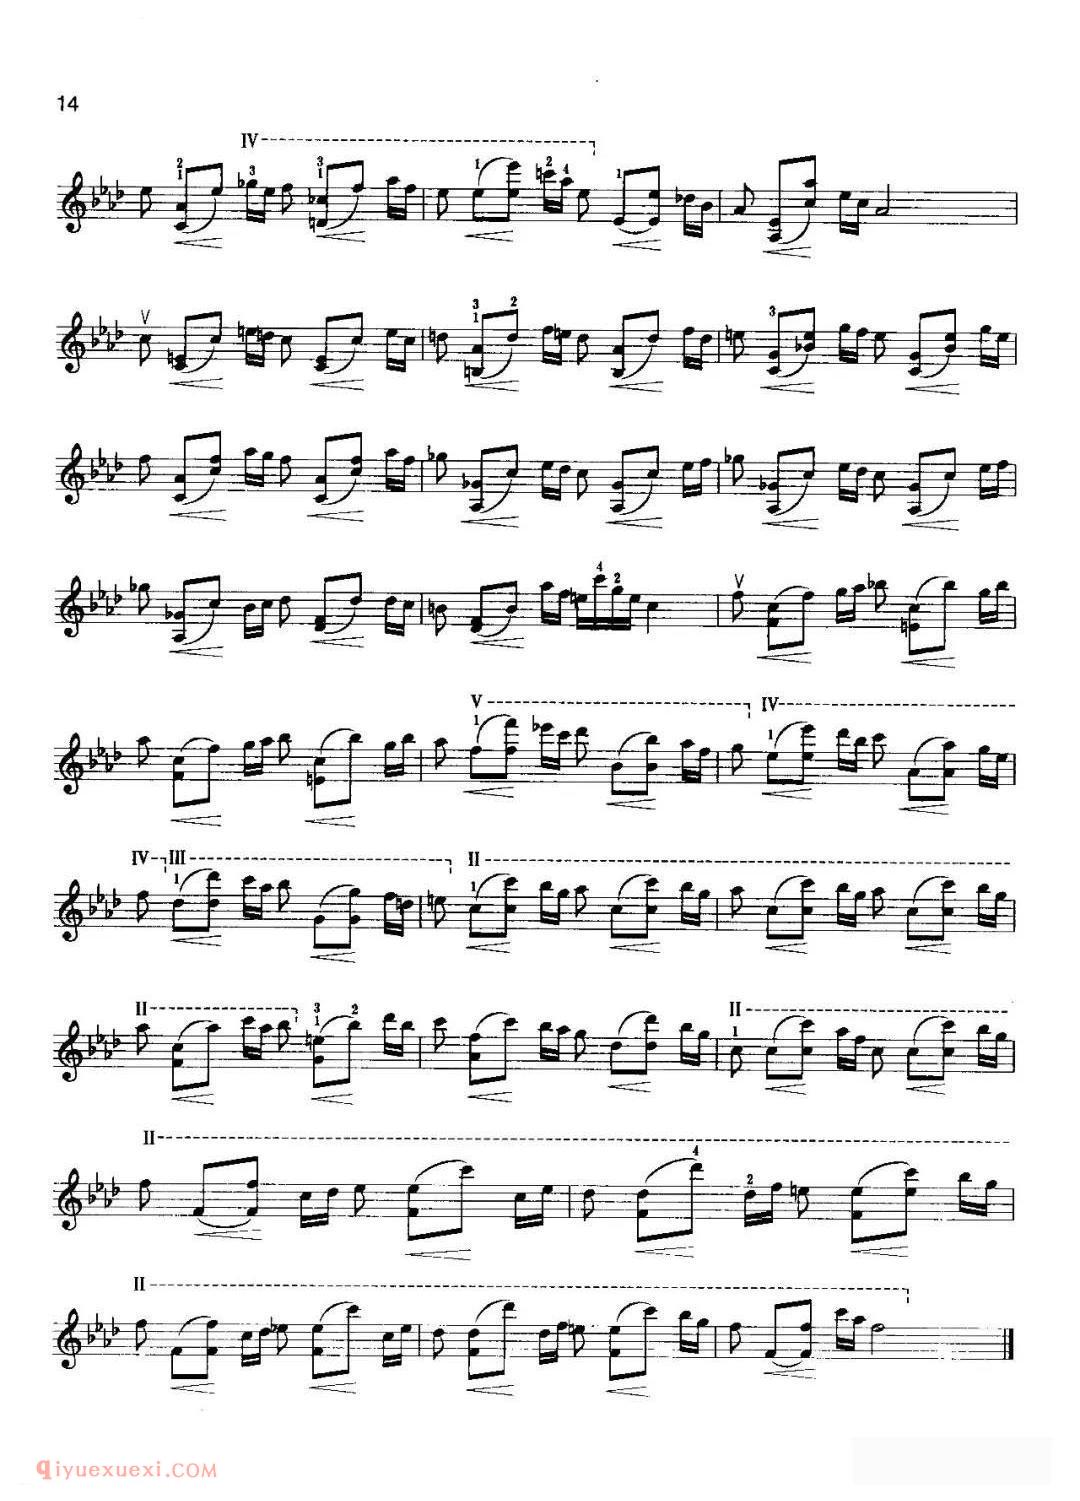 小提琴考级曲谱《七级：练习曲/克莱采尔 No.37》